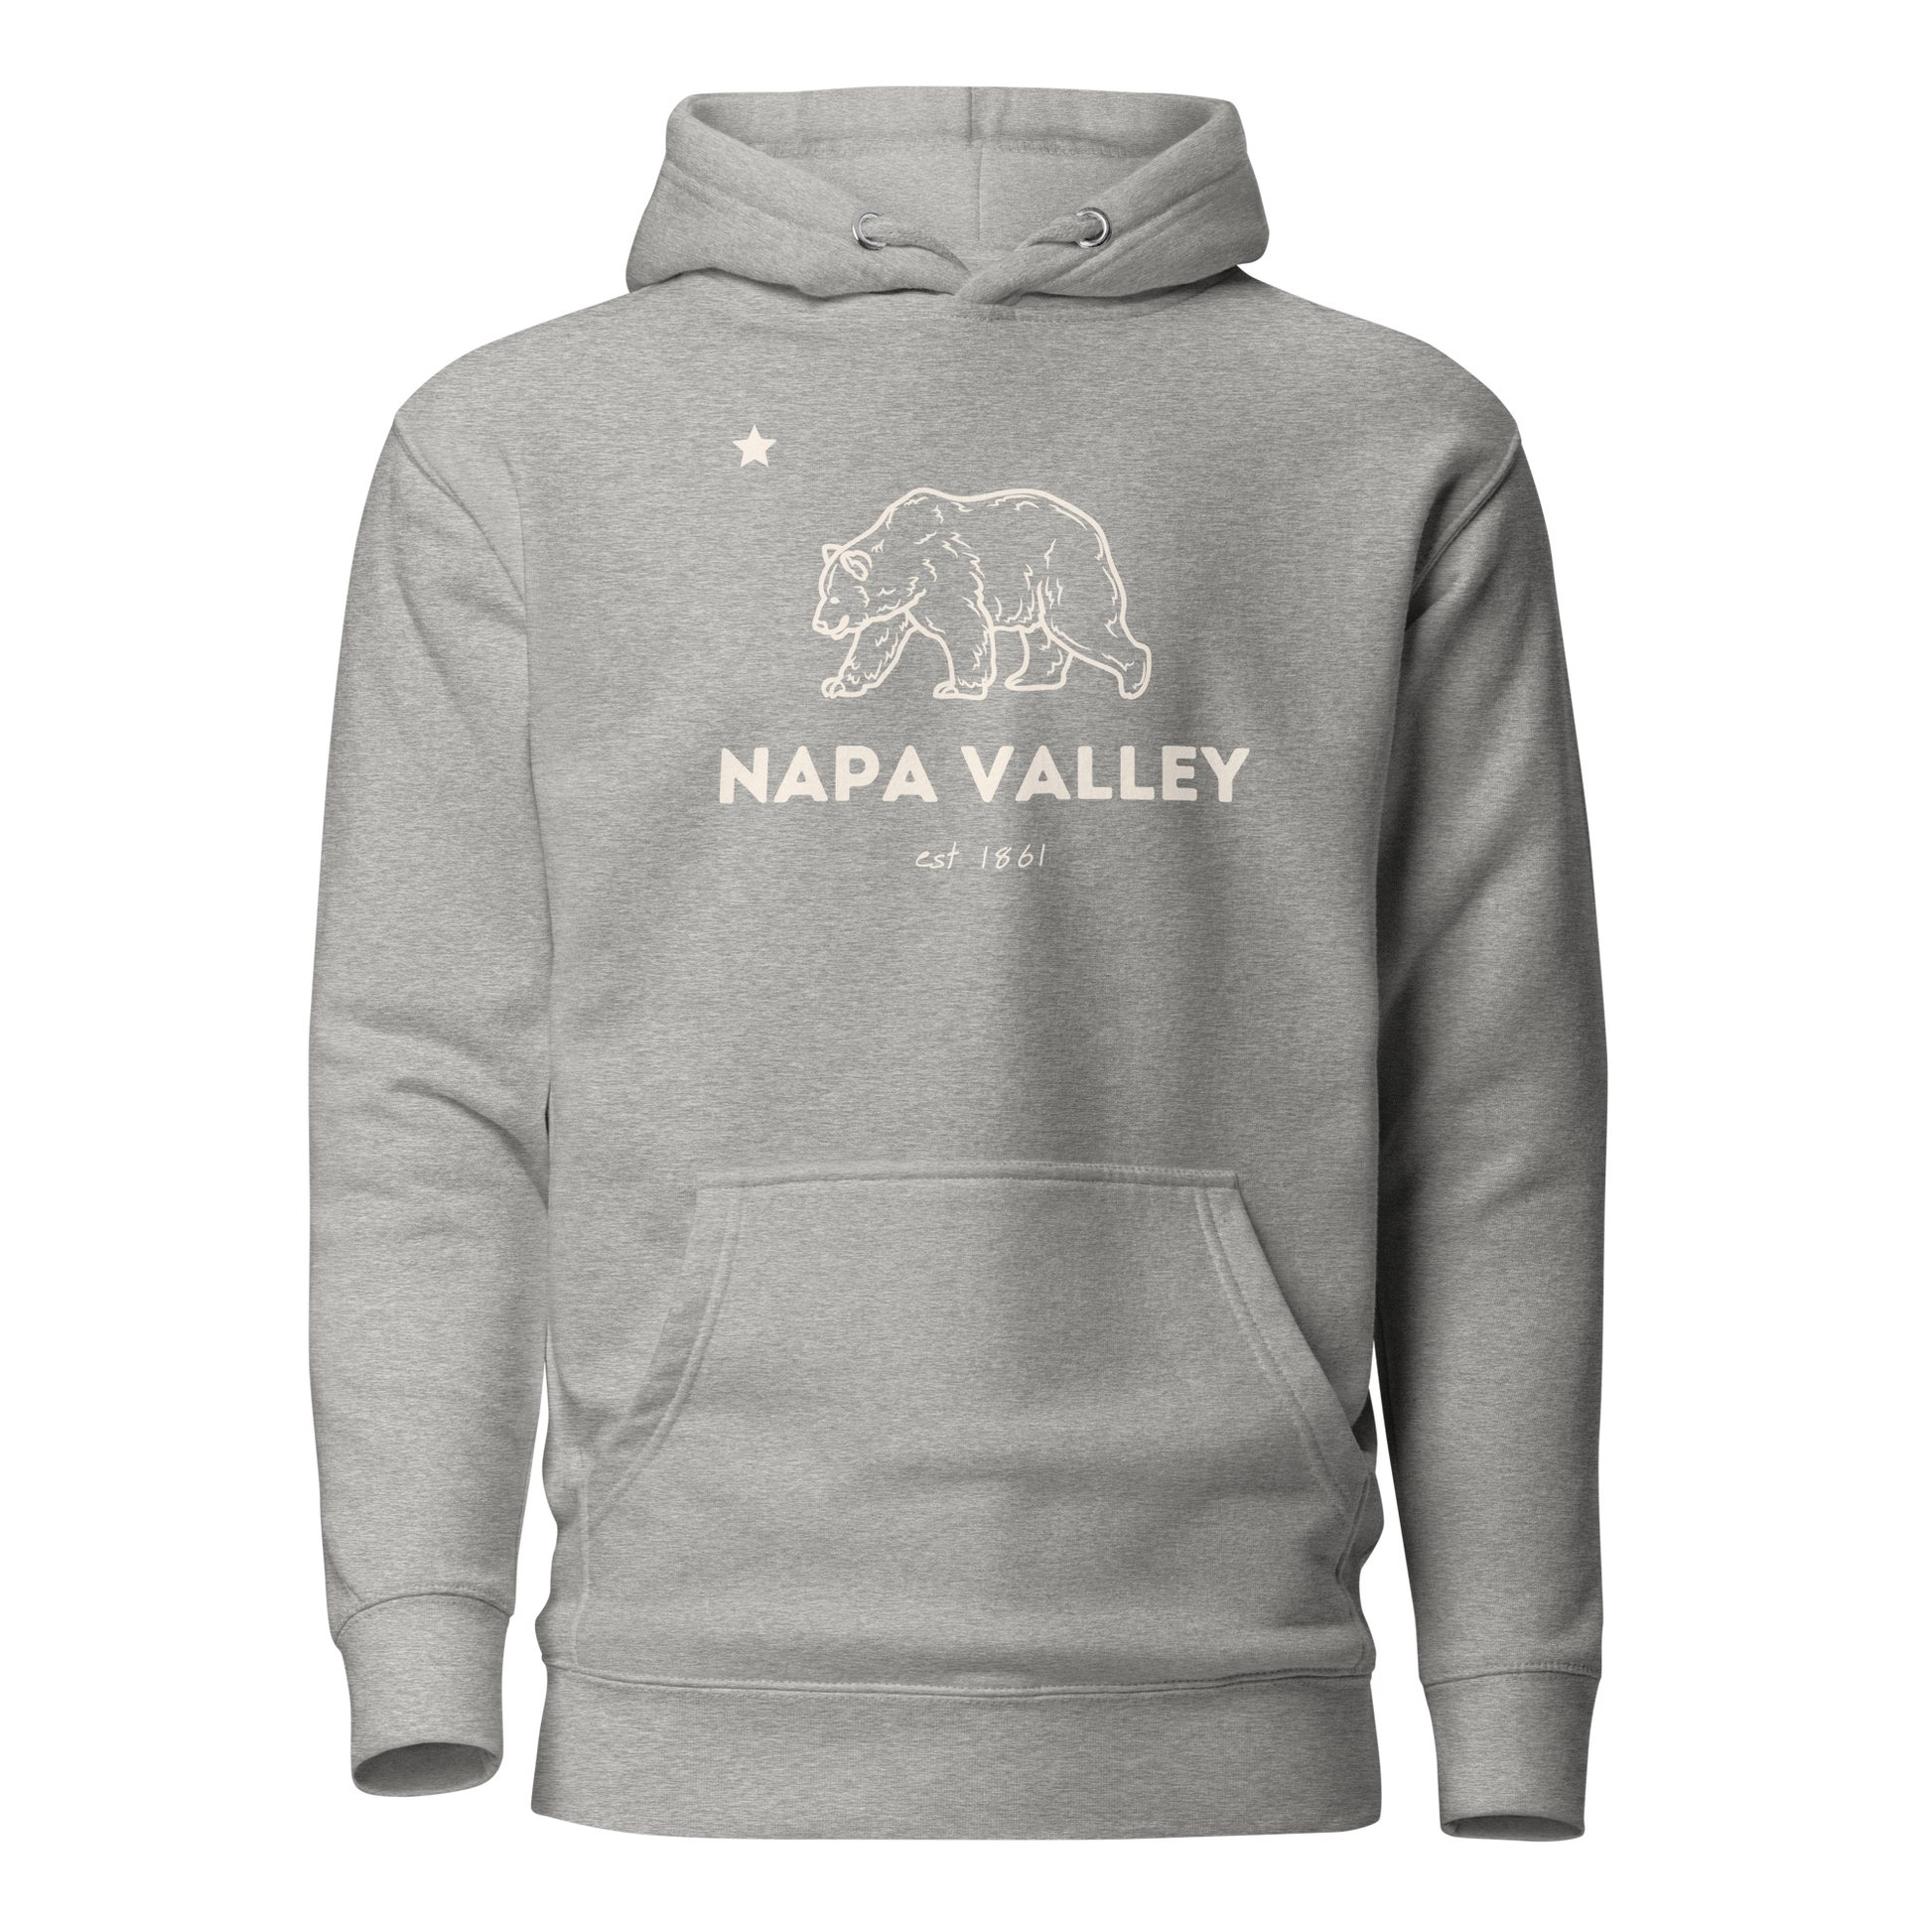 Napa Valley grey hoodie